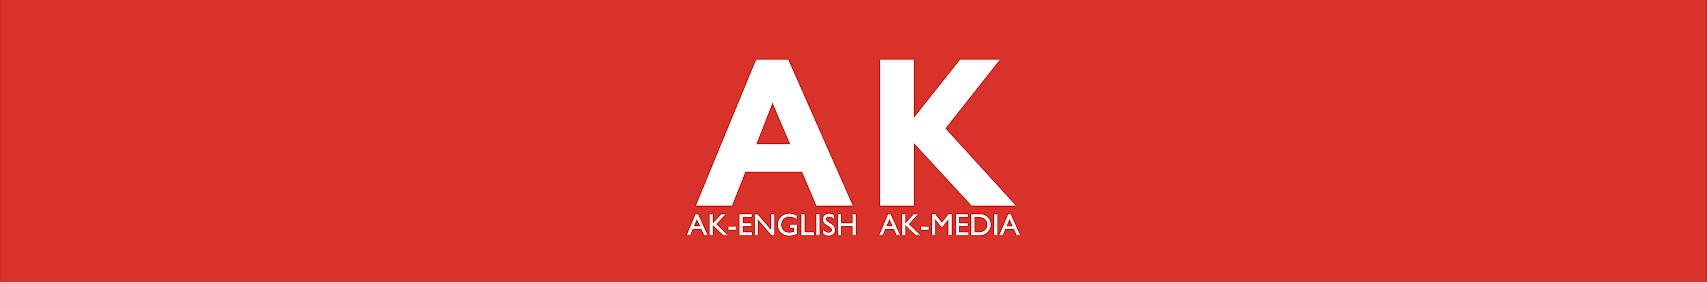 AK-English